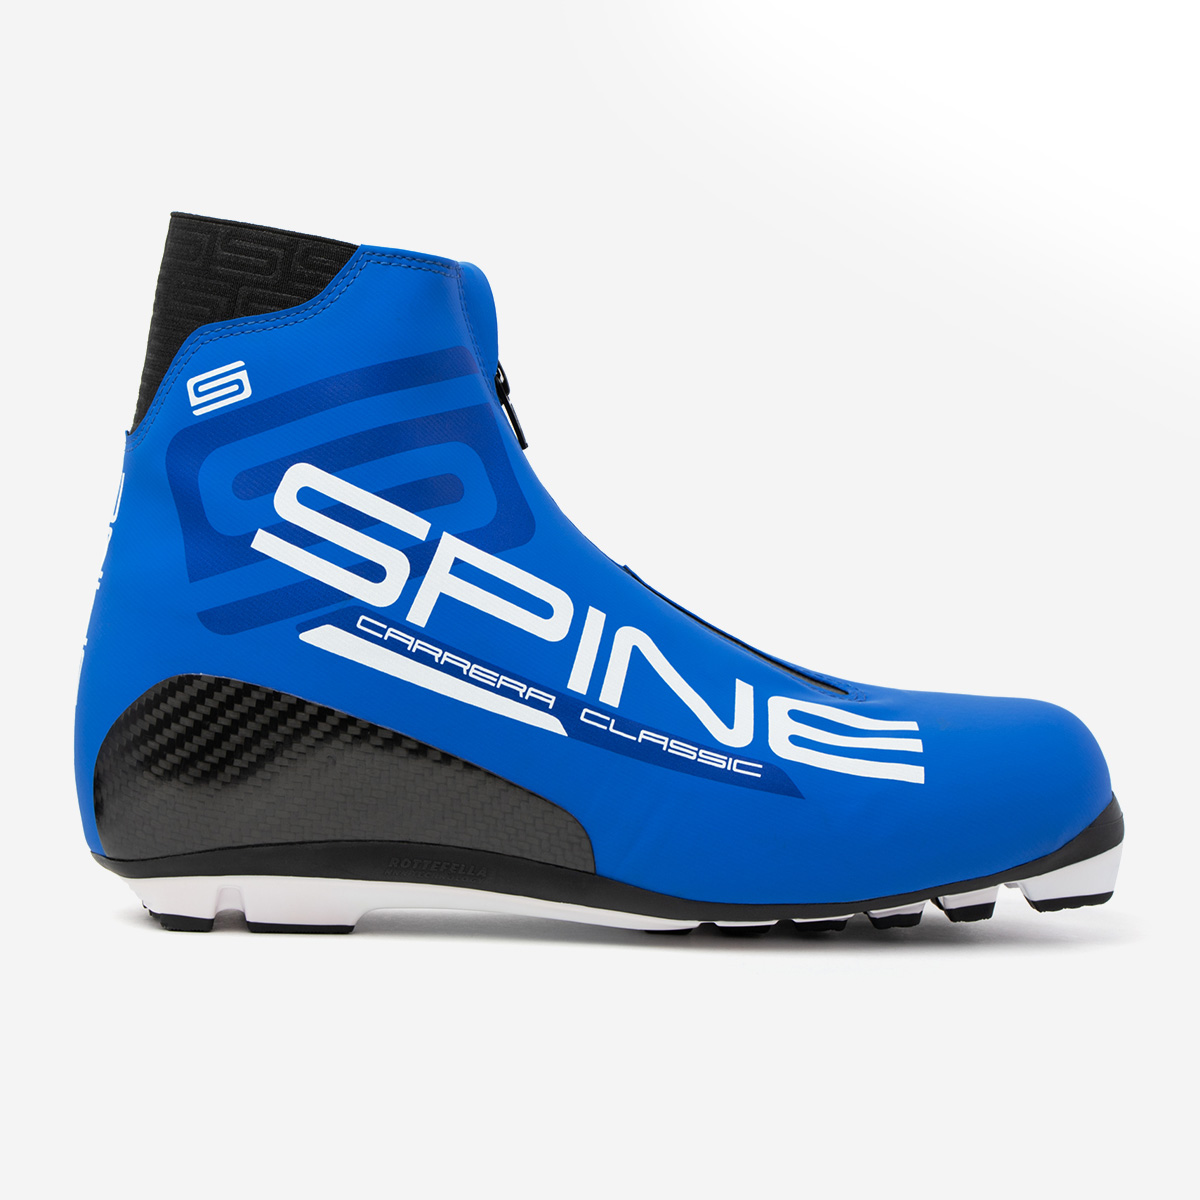 Pro classic купить. Ботинки лыжные Spine Carrera Classic. Лыжные ботинки Spine NNN. Лыжные ботинки Spine RC Combi 86 (NNN). Ботинки Spine Carrera Carbon.